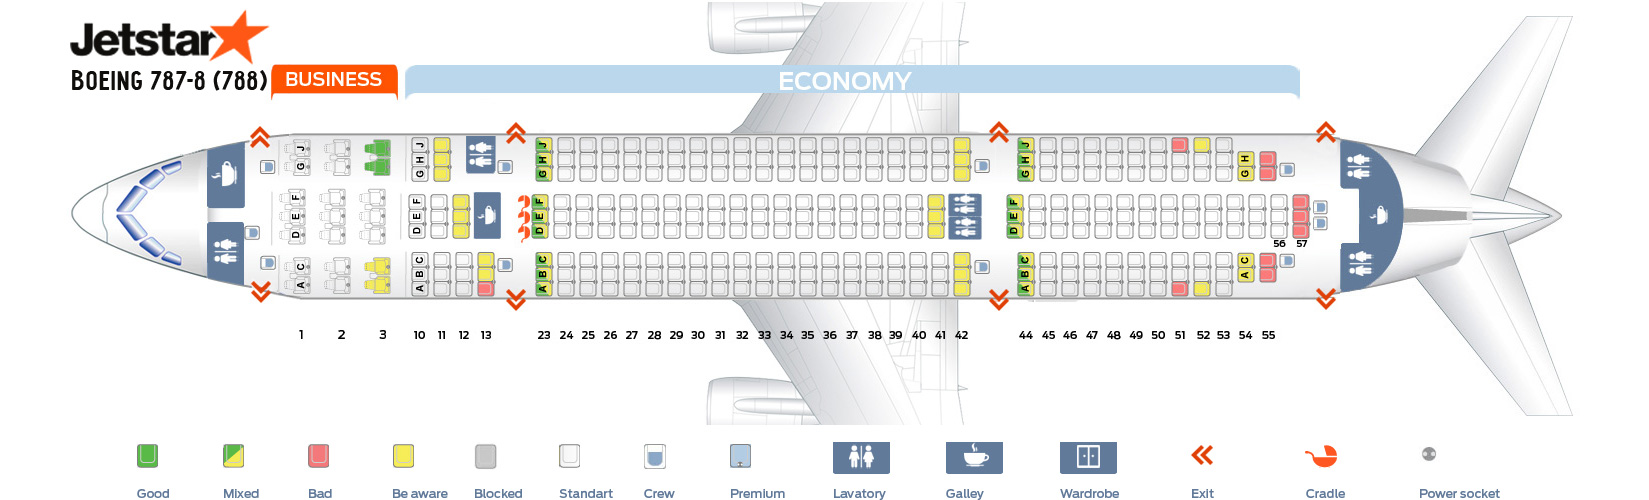 Dreamliner Seating Chart